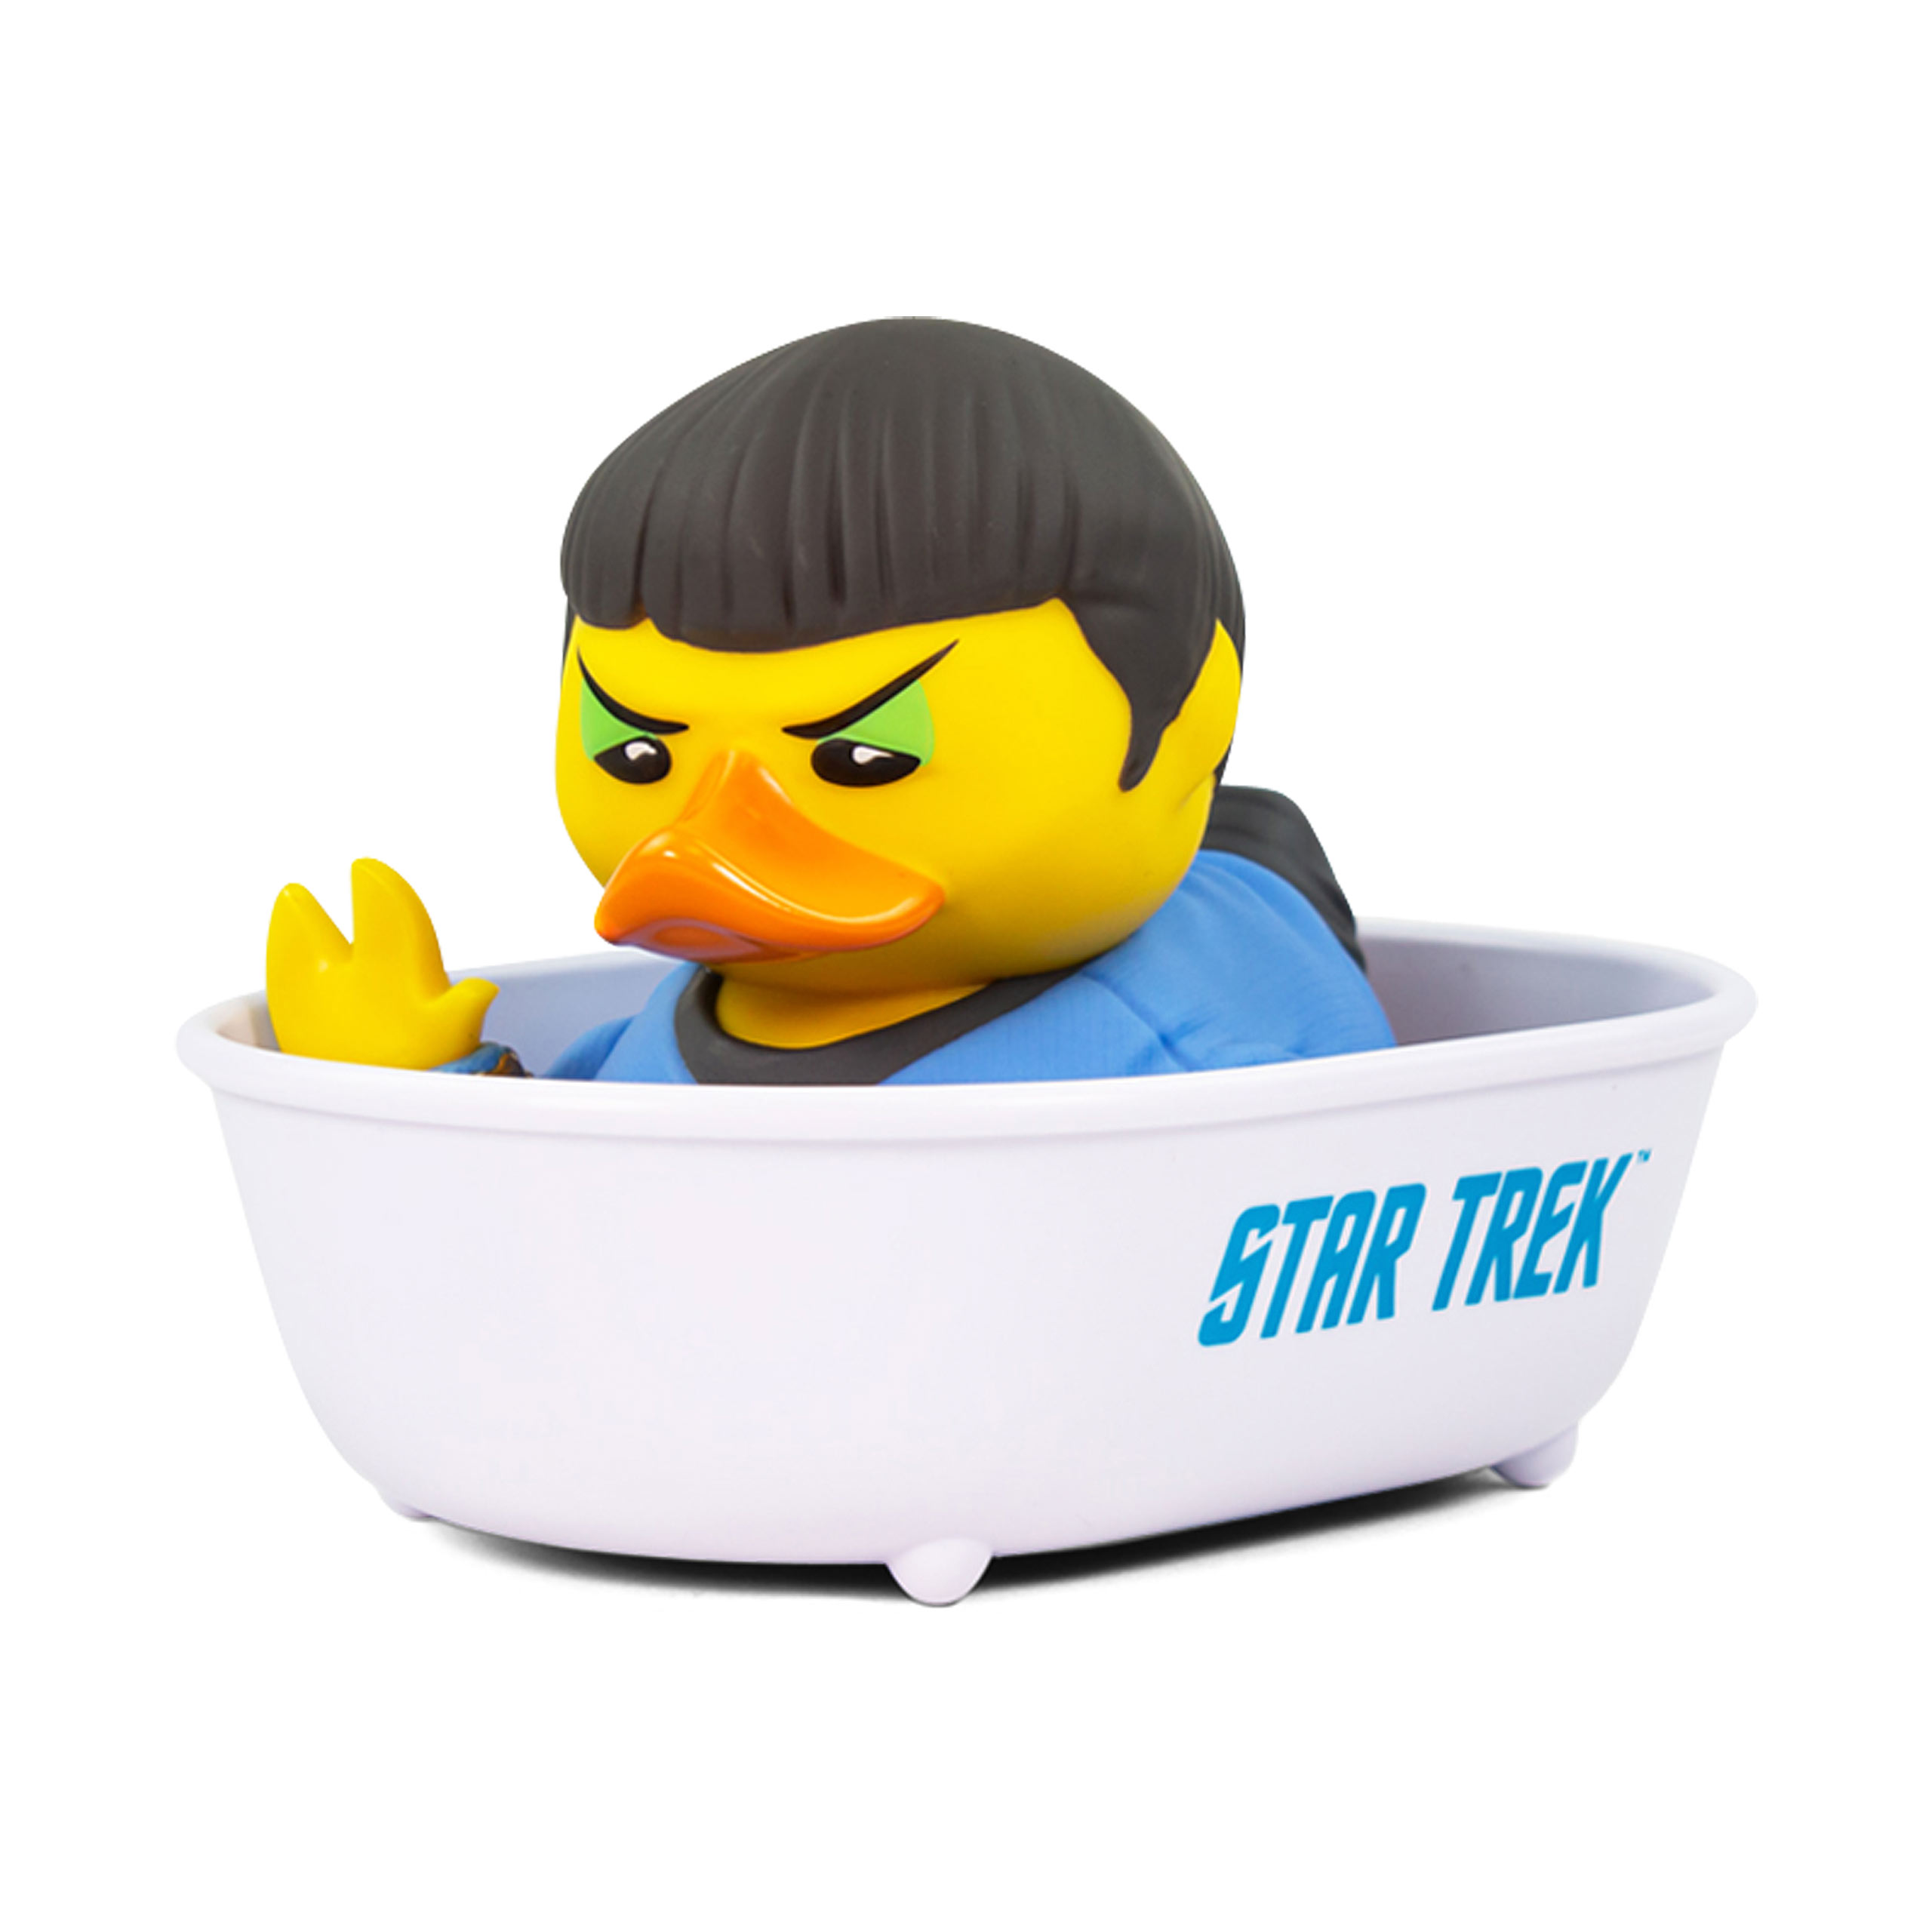 Star Trek - Spock TUBBZ Decoratieve Eend